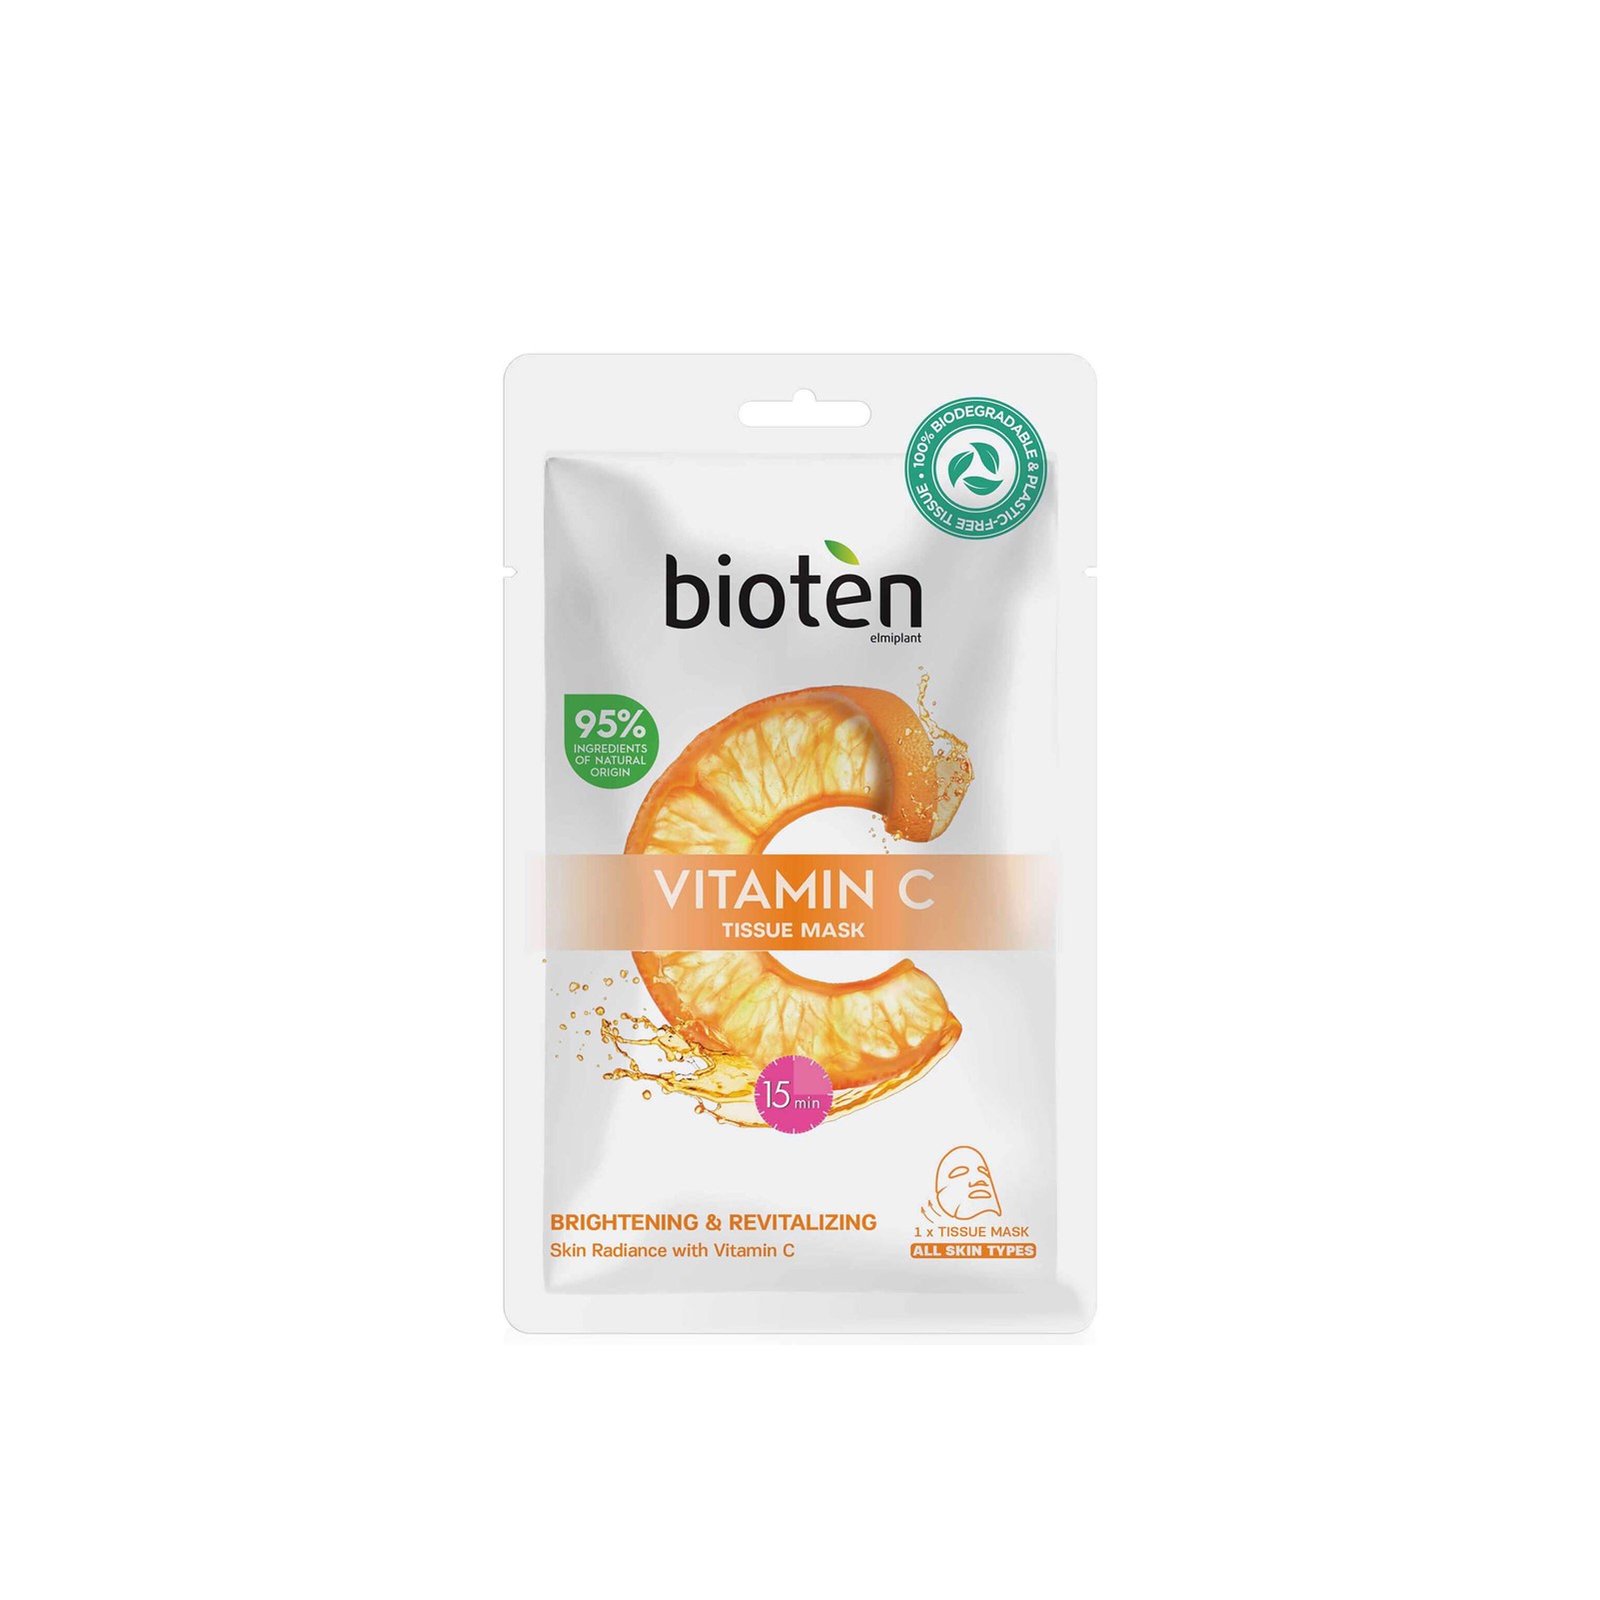 bioten Vitamin C Tissue Mask x1